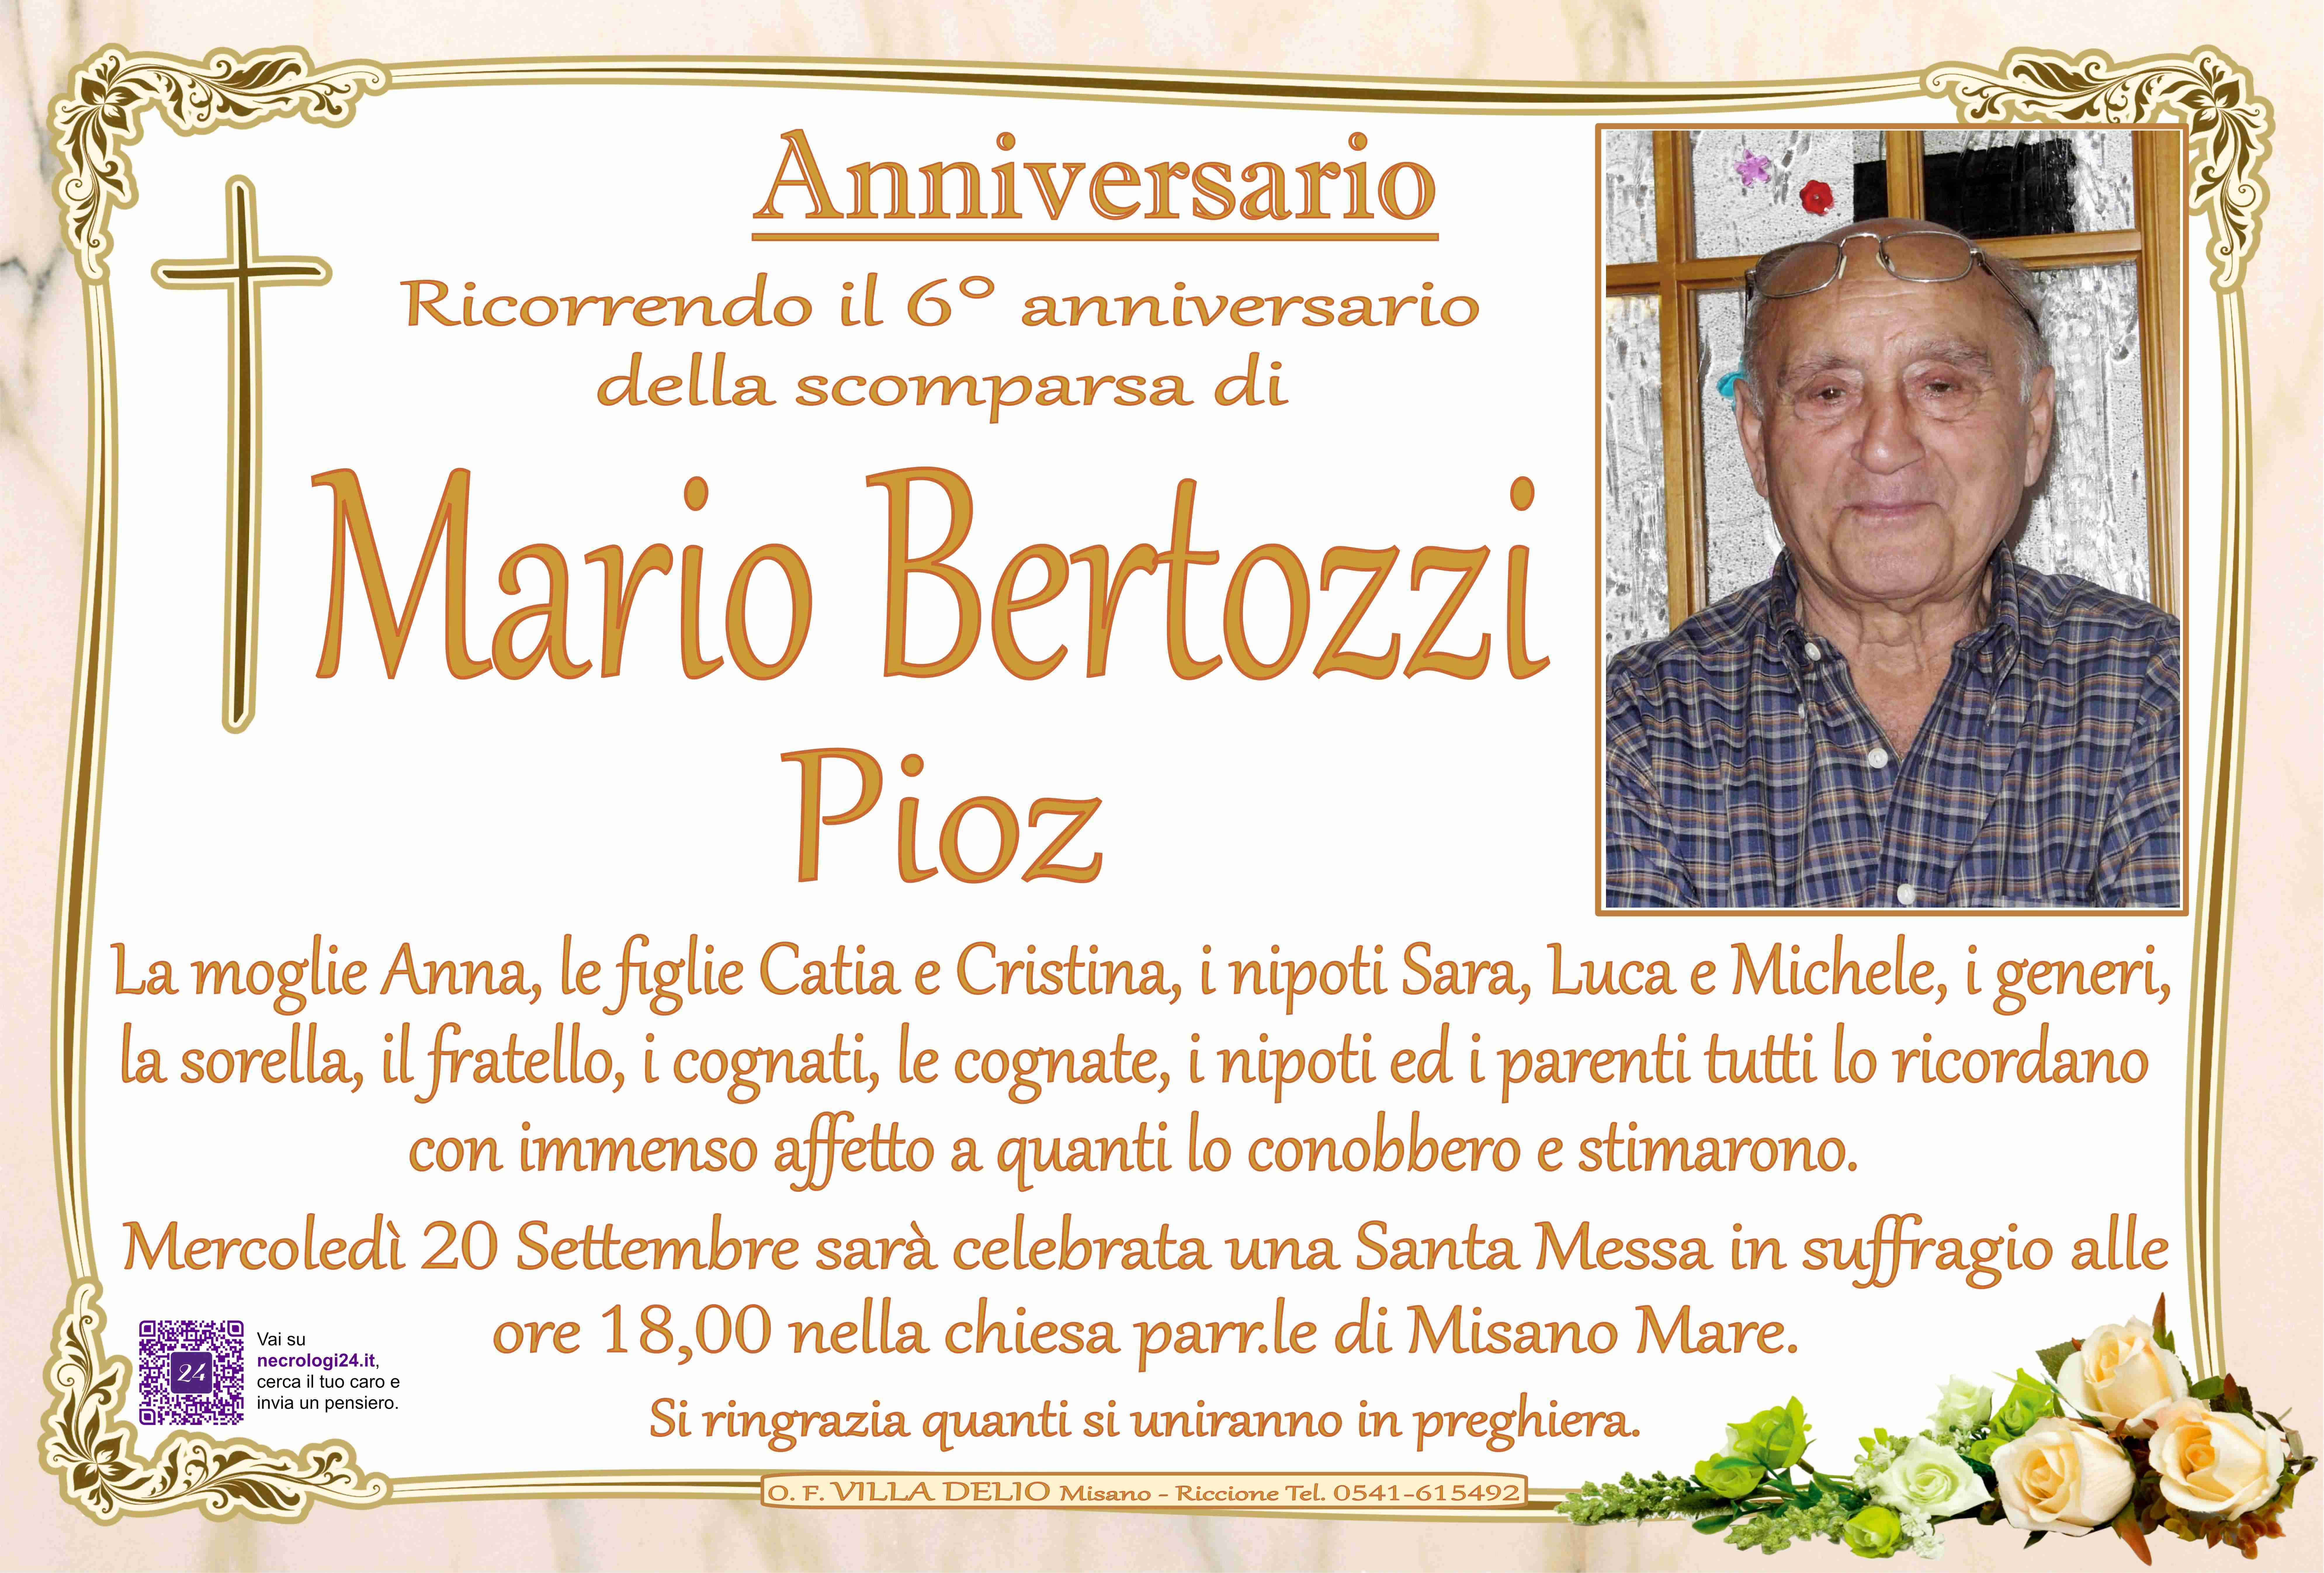 Mario Bertozzi (Pioz)